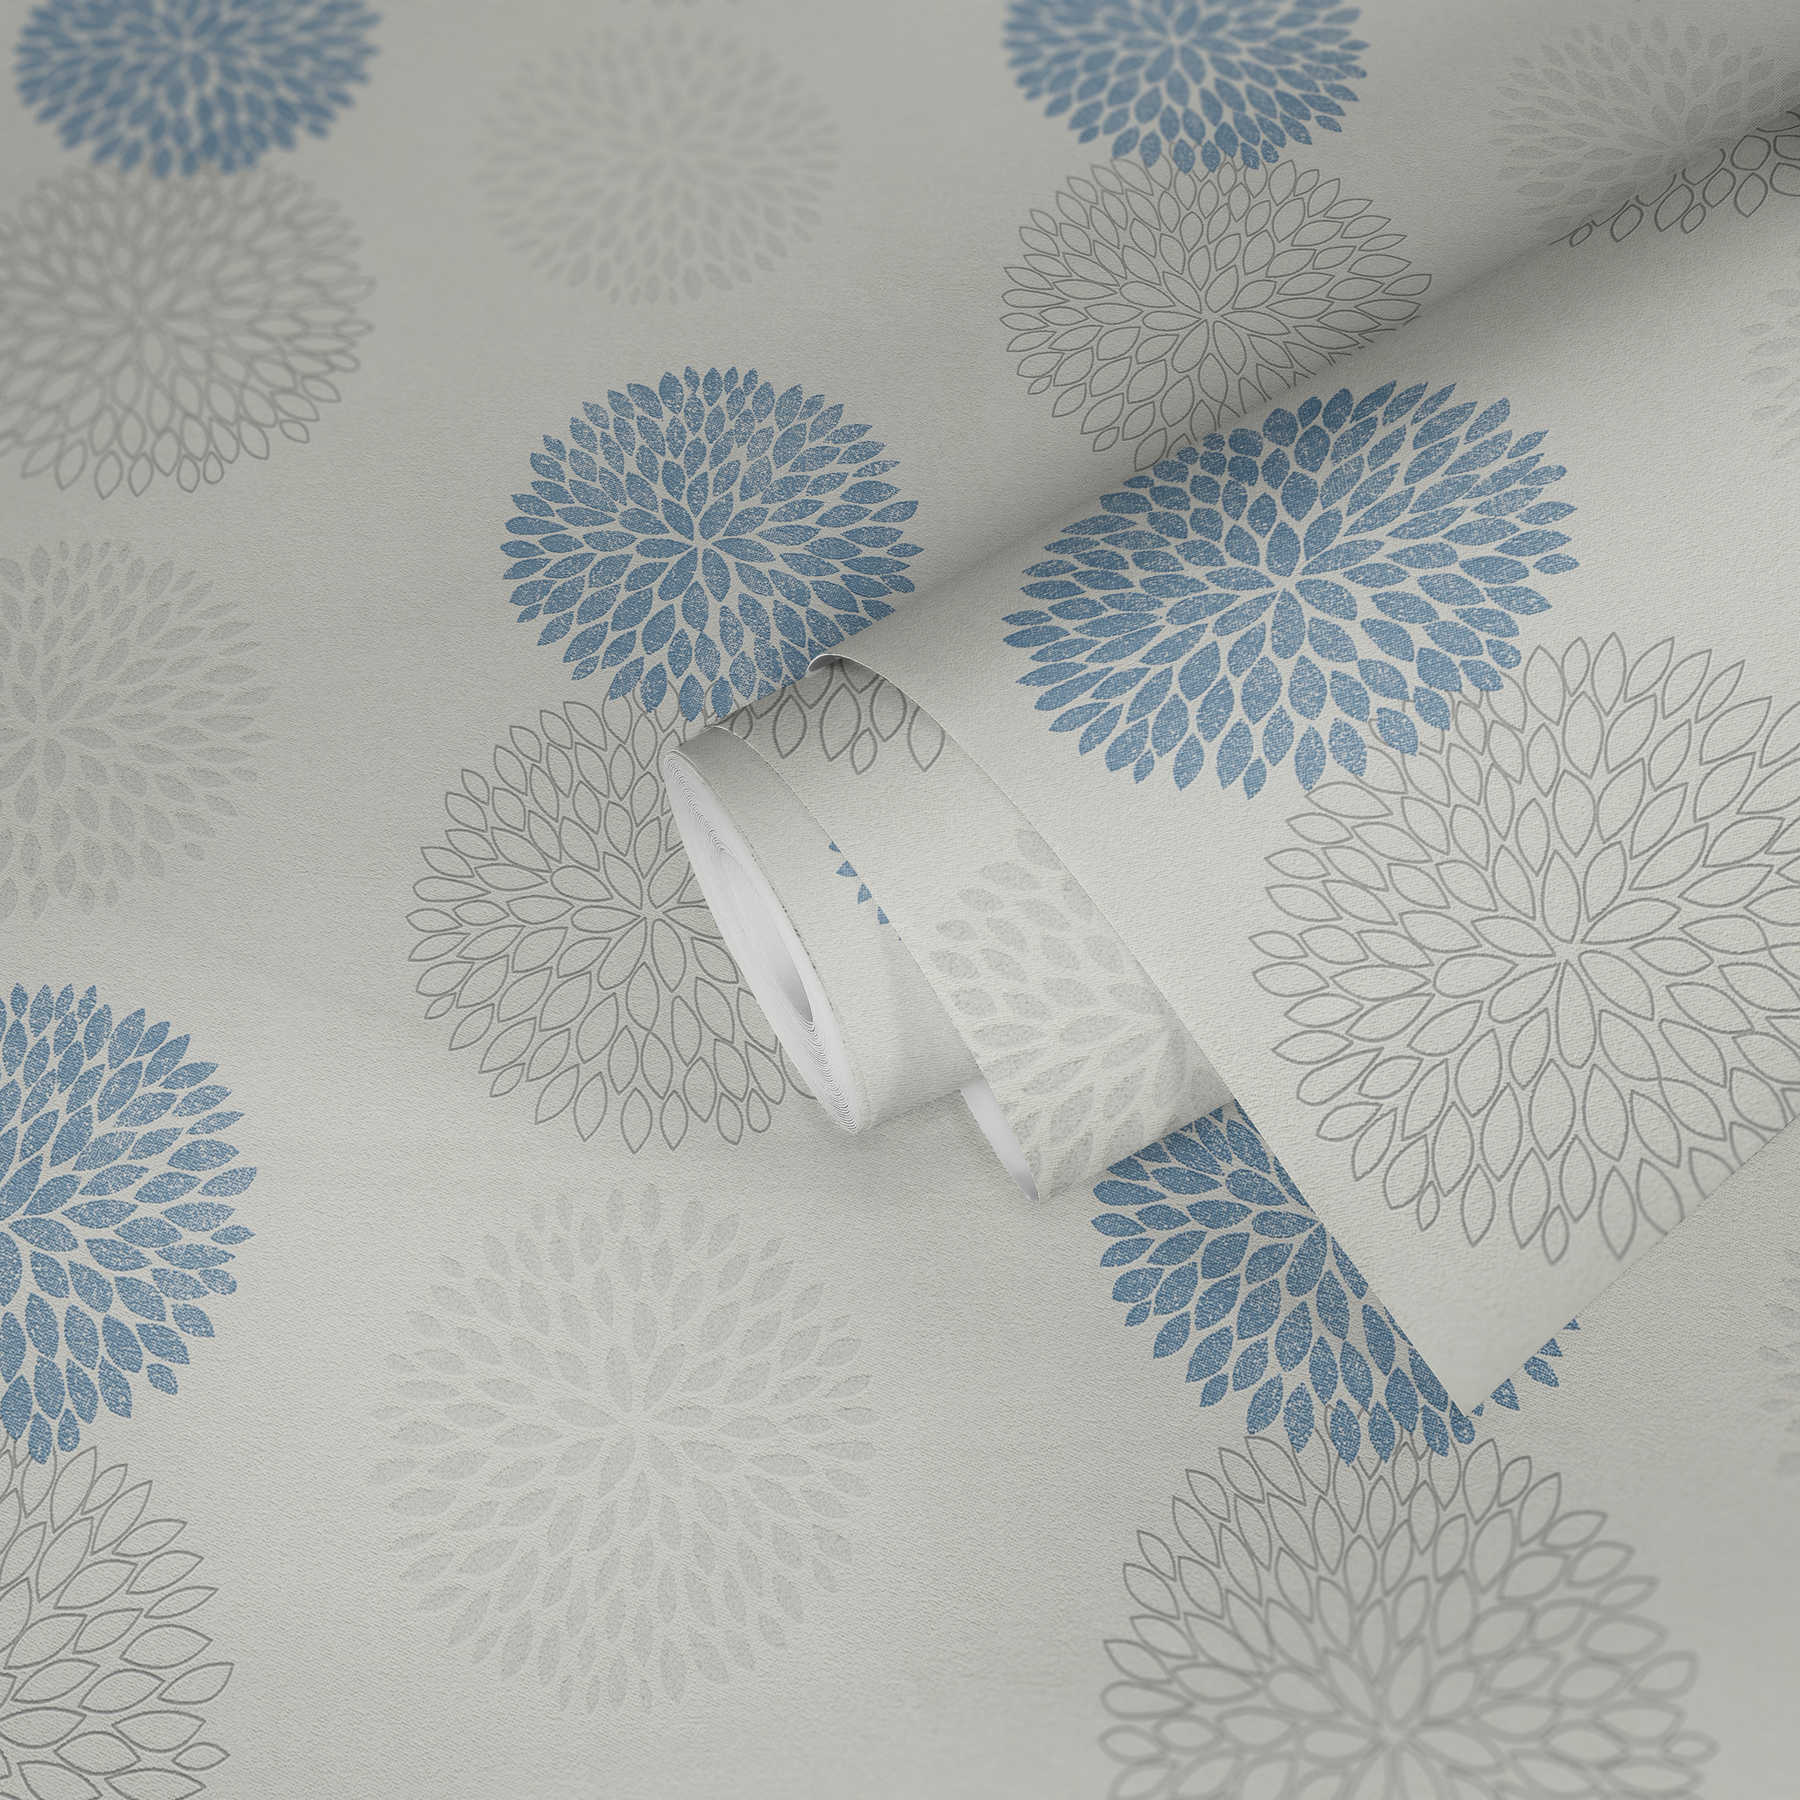             Behang met grafisch bloemenpatroon - blauw, grijs, wit
        